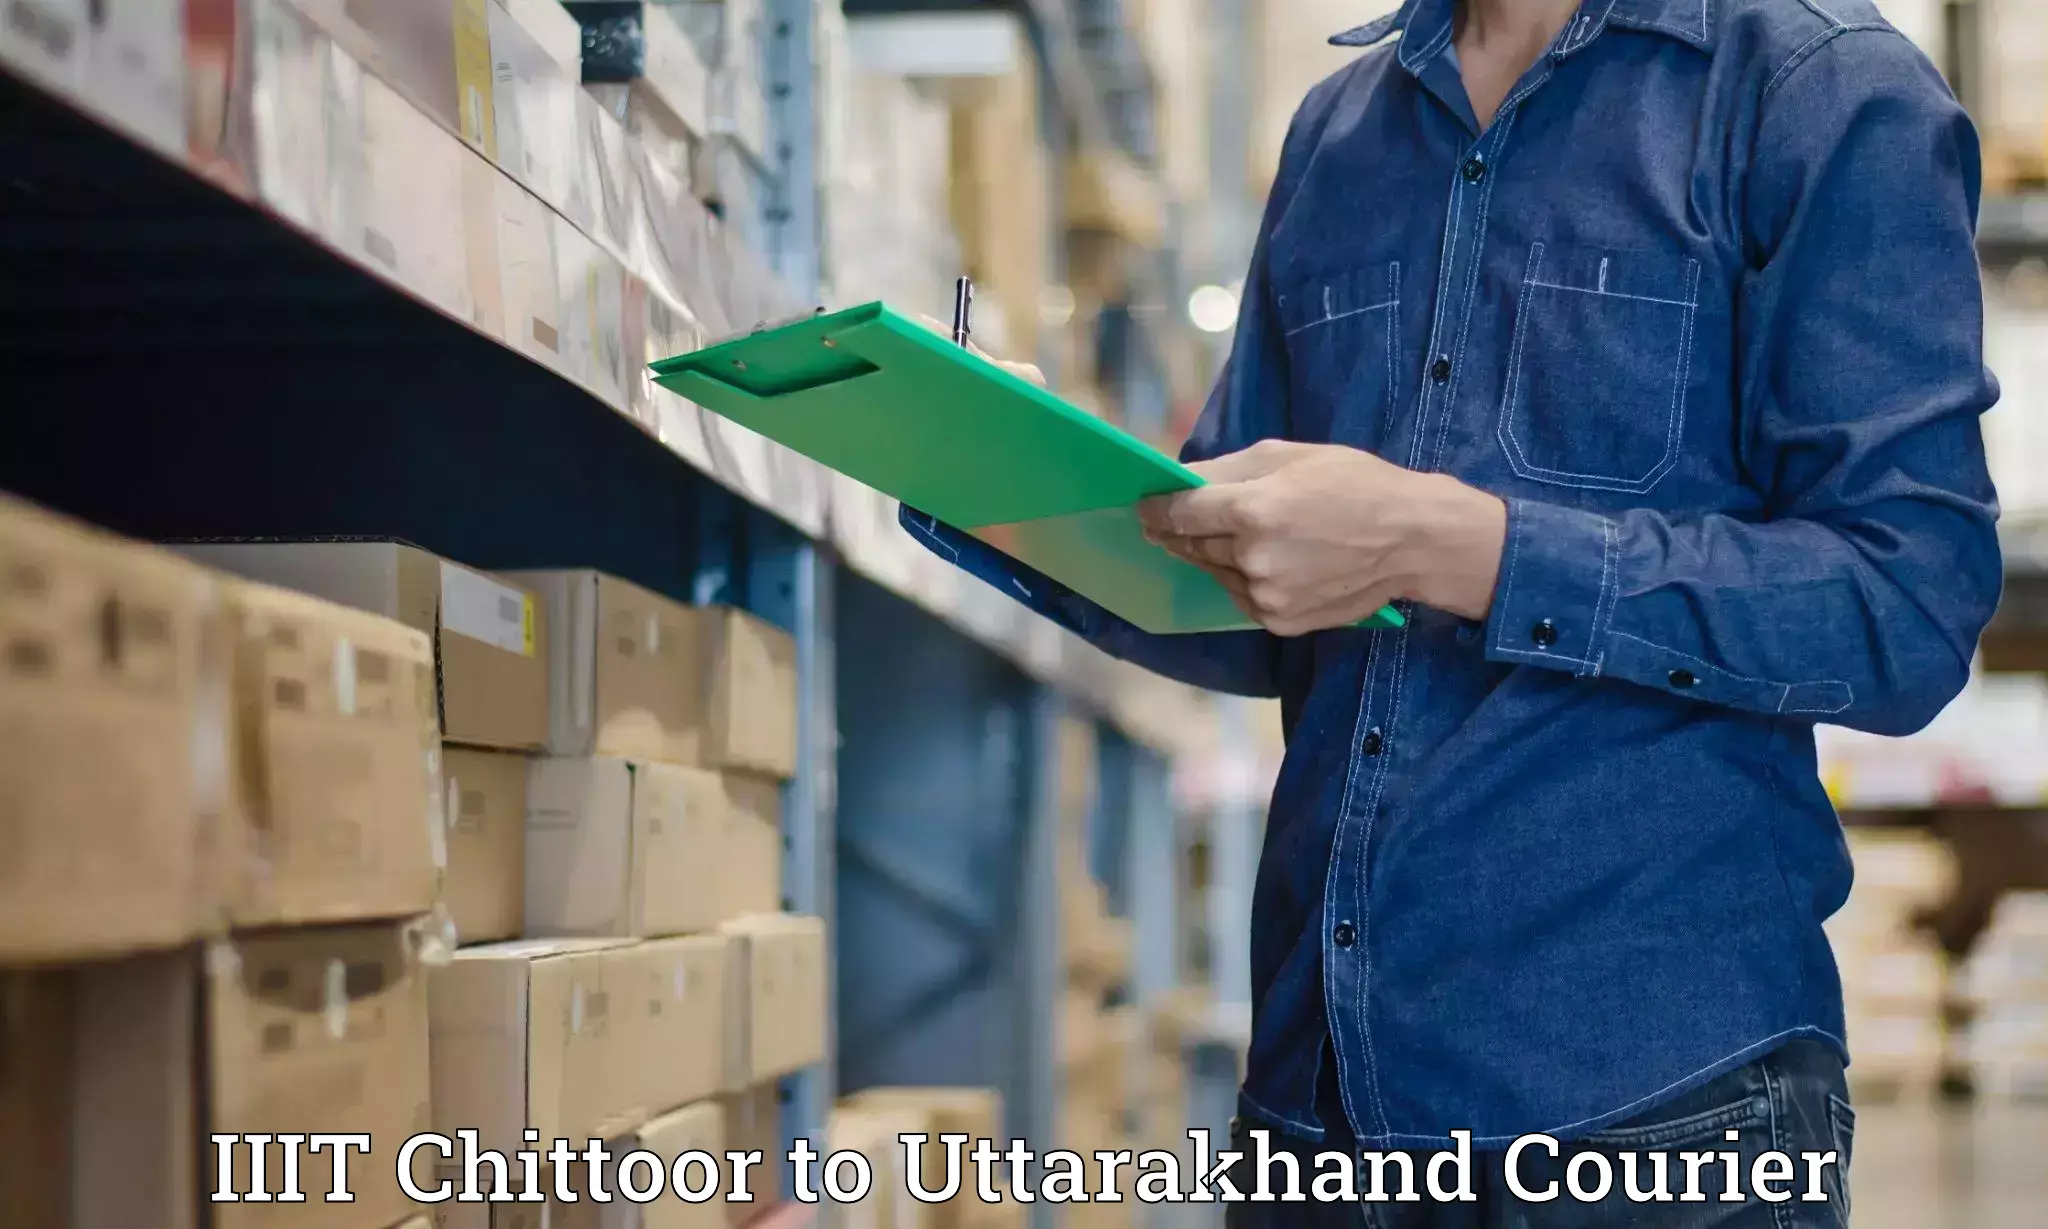 Premium courier services IIIT Chittoor to Uttarakhand